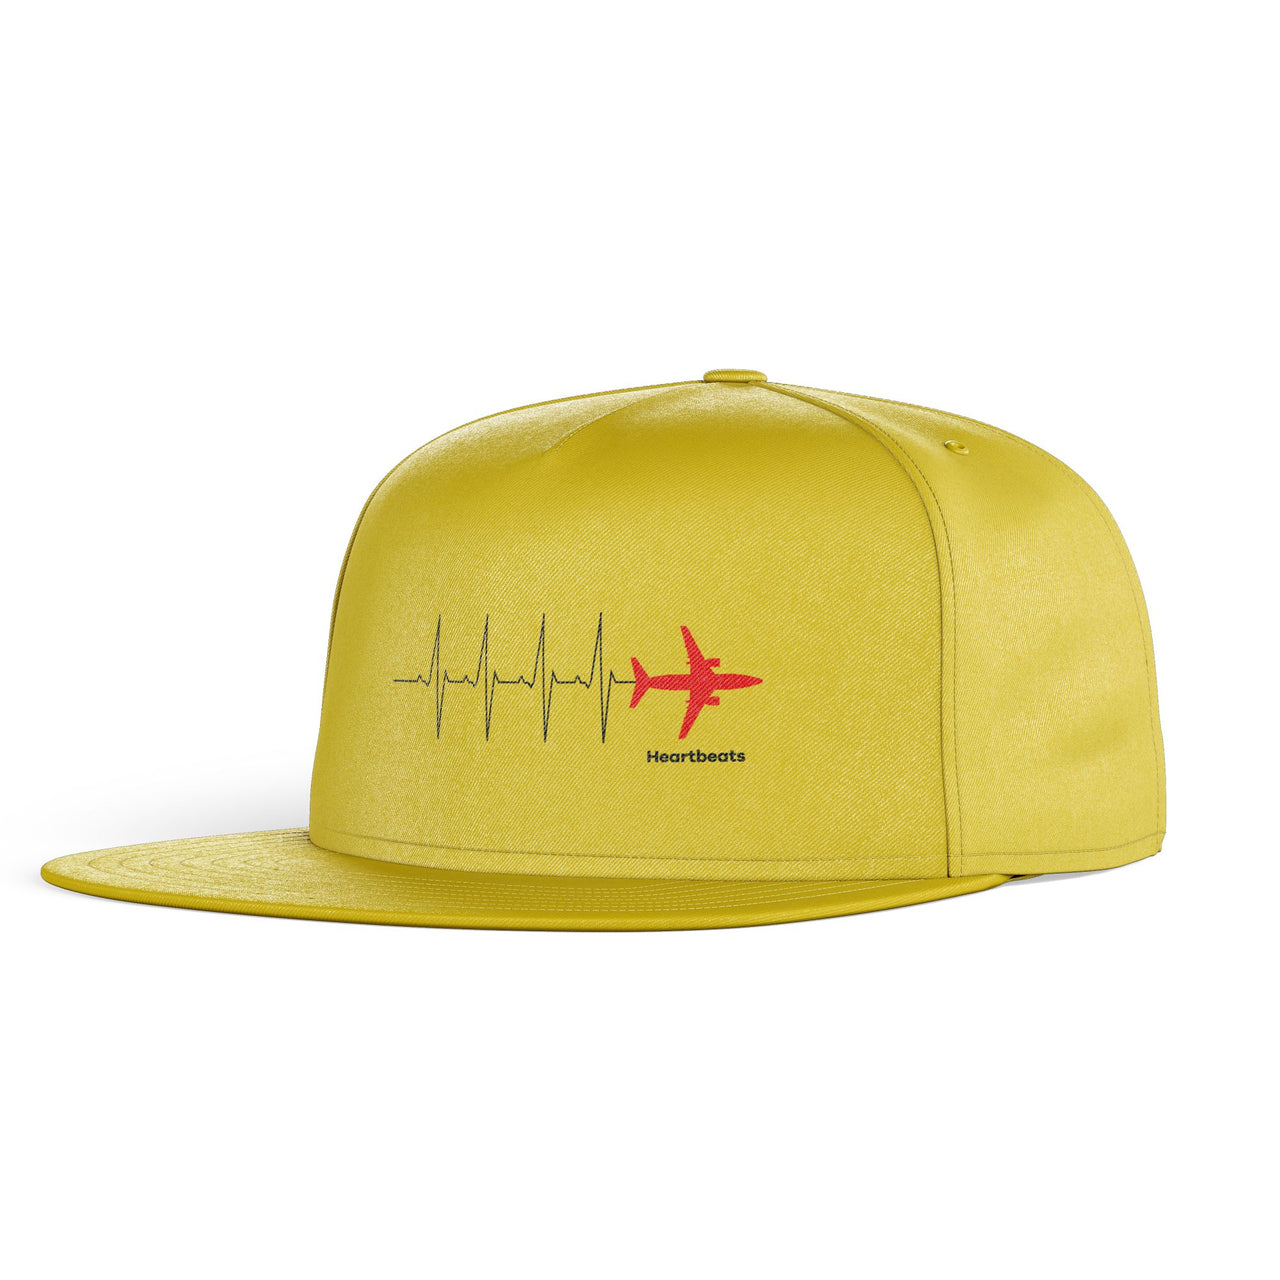 Aviation Heartbeats Designed Snapback Caps & Hats